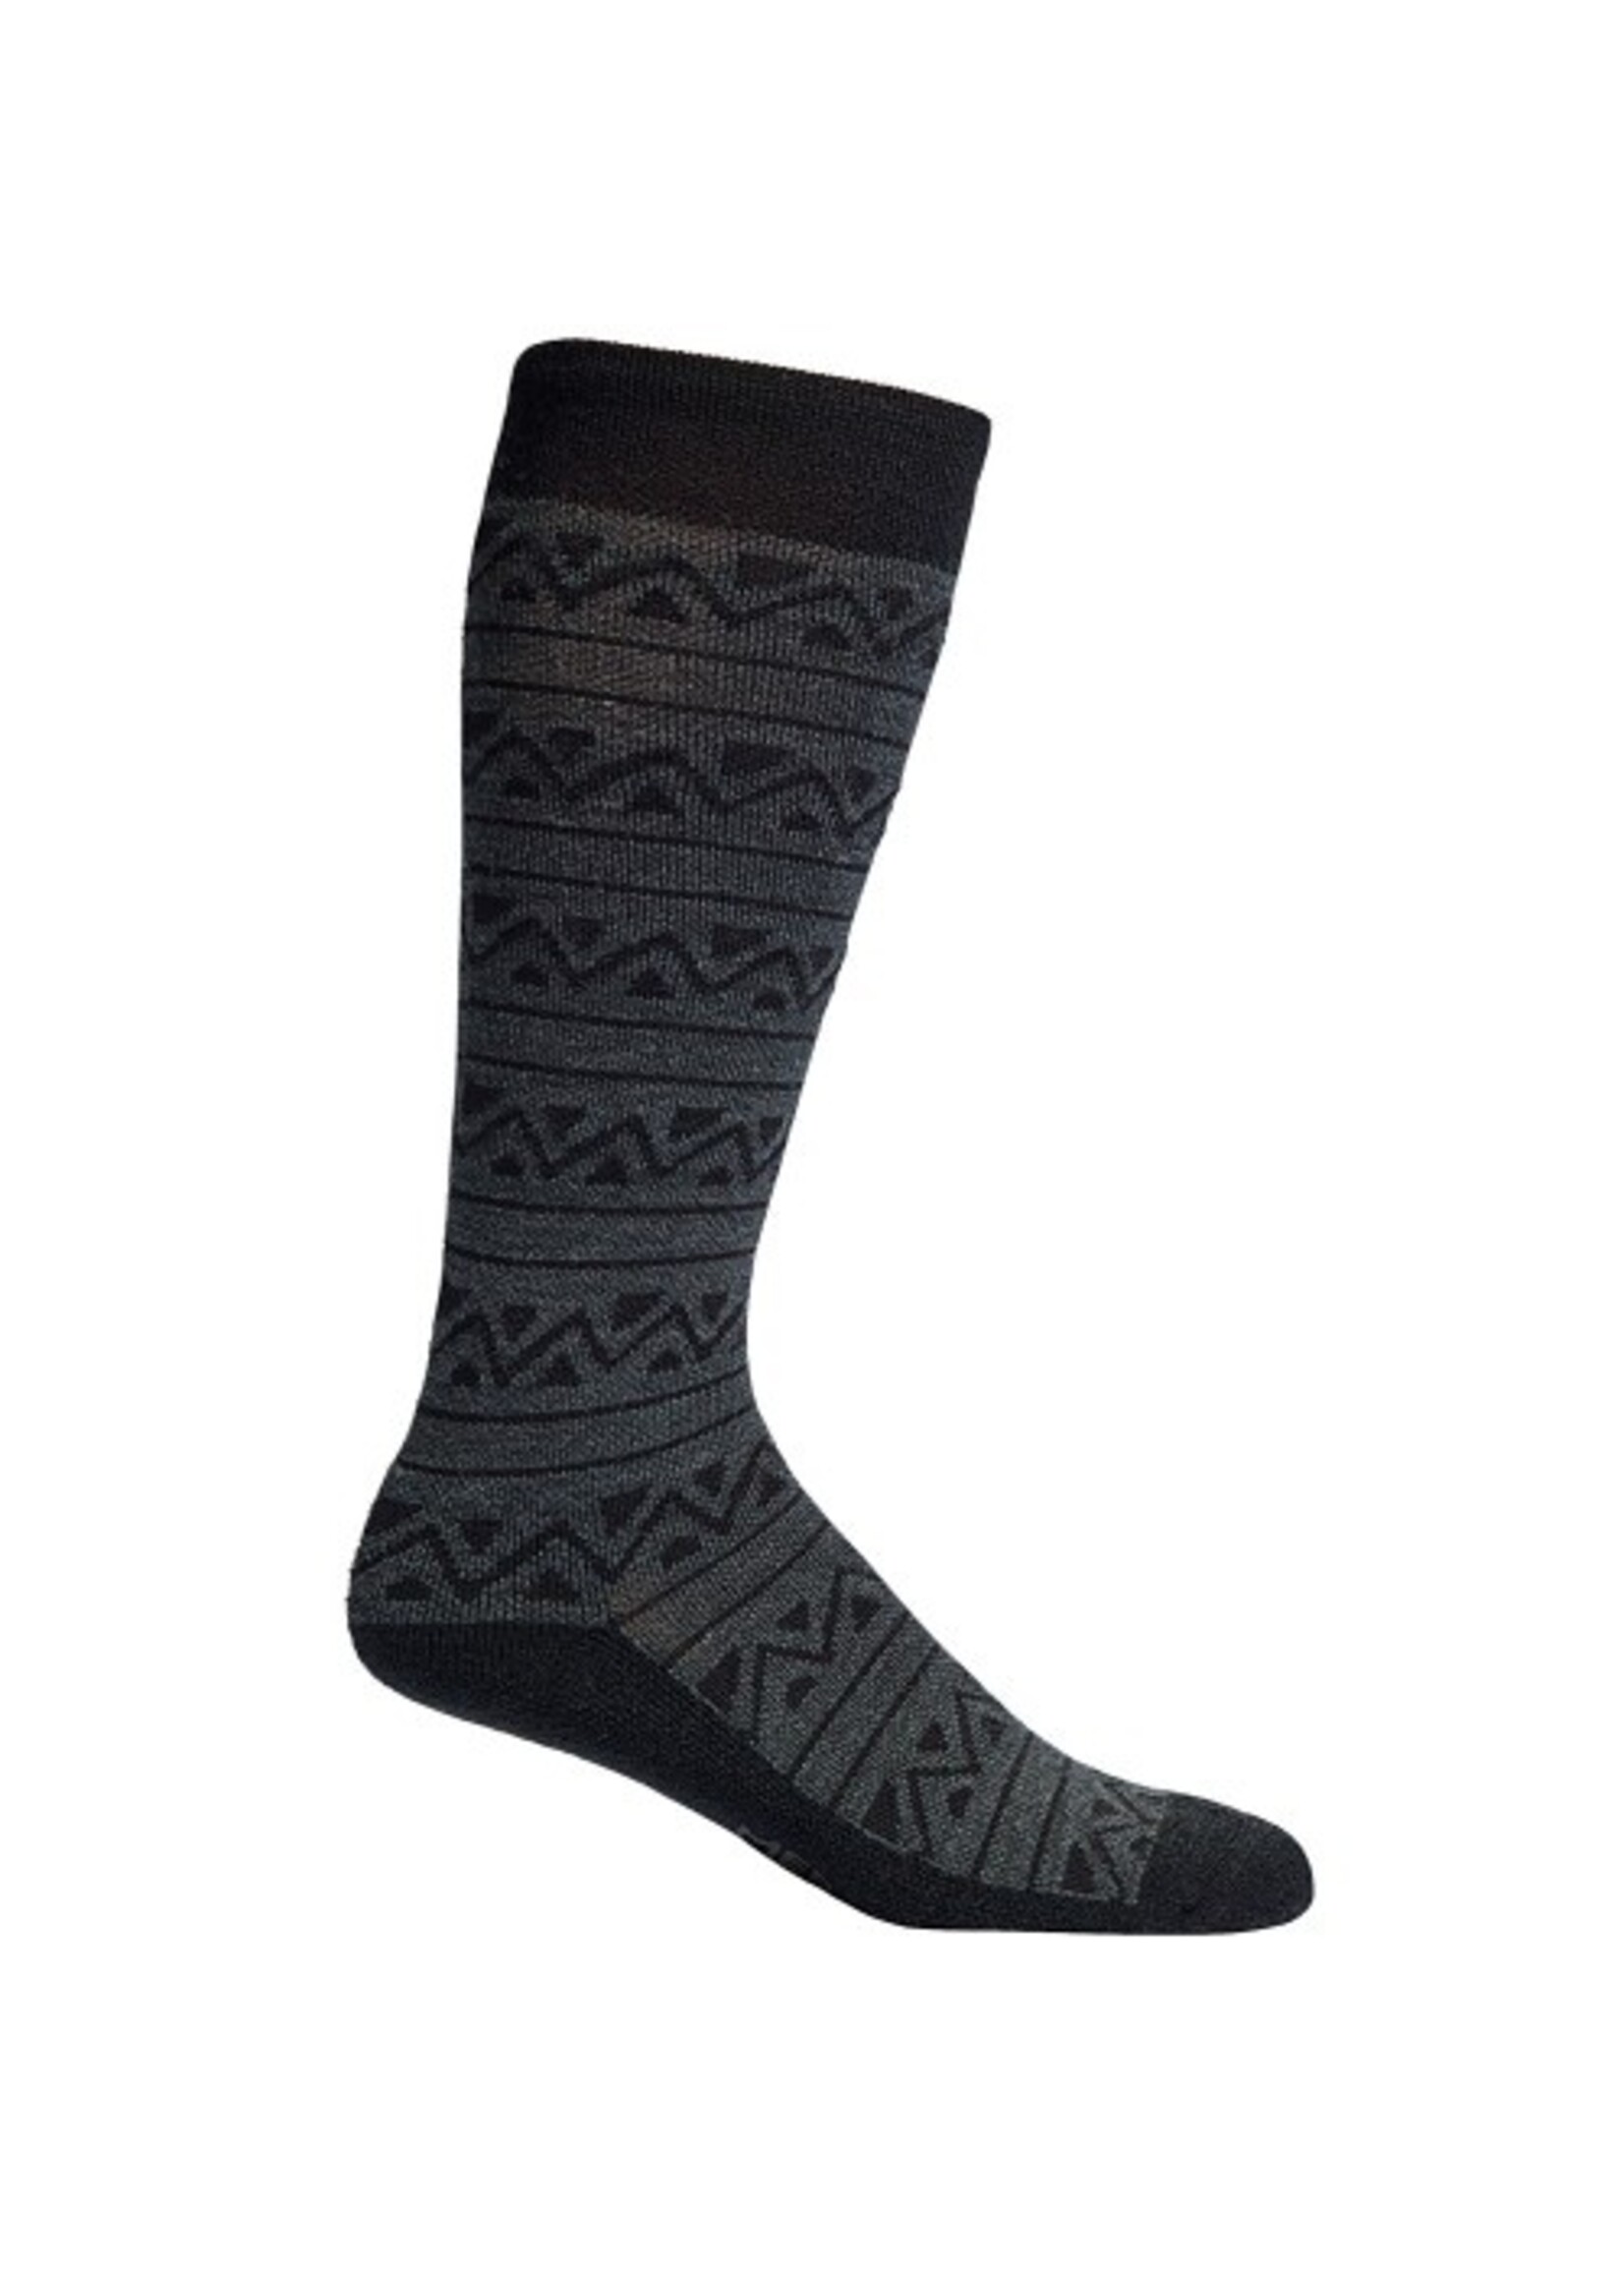 Mephisto Tribal Socks